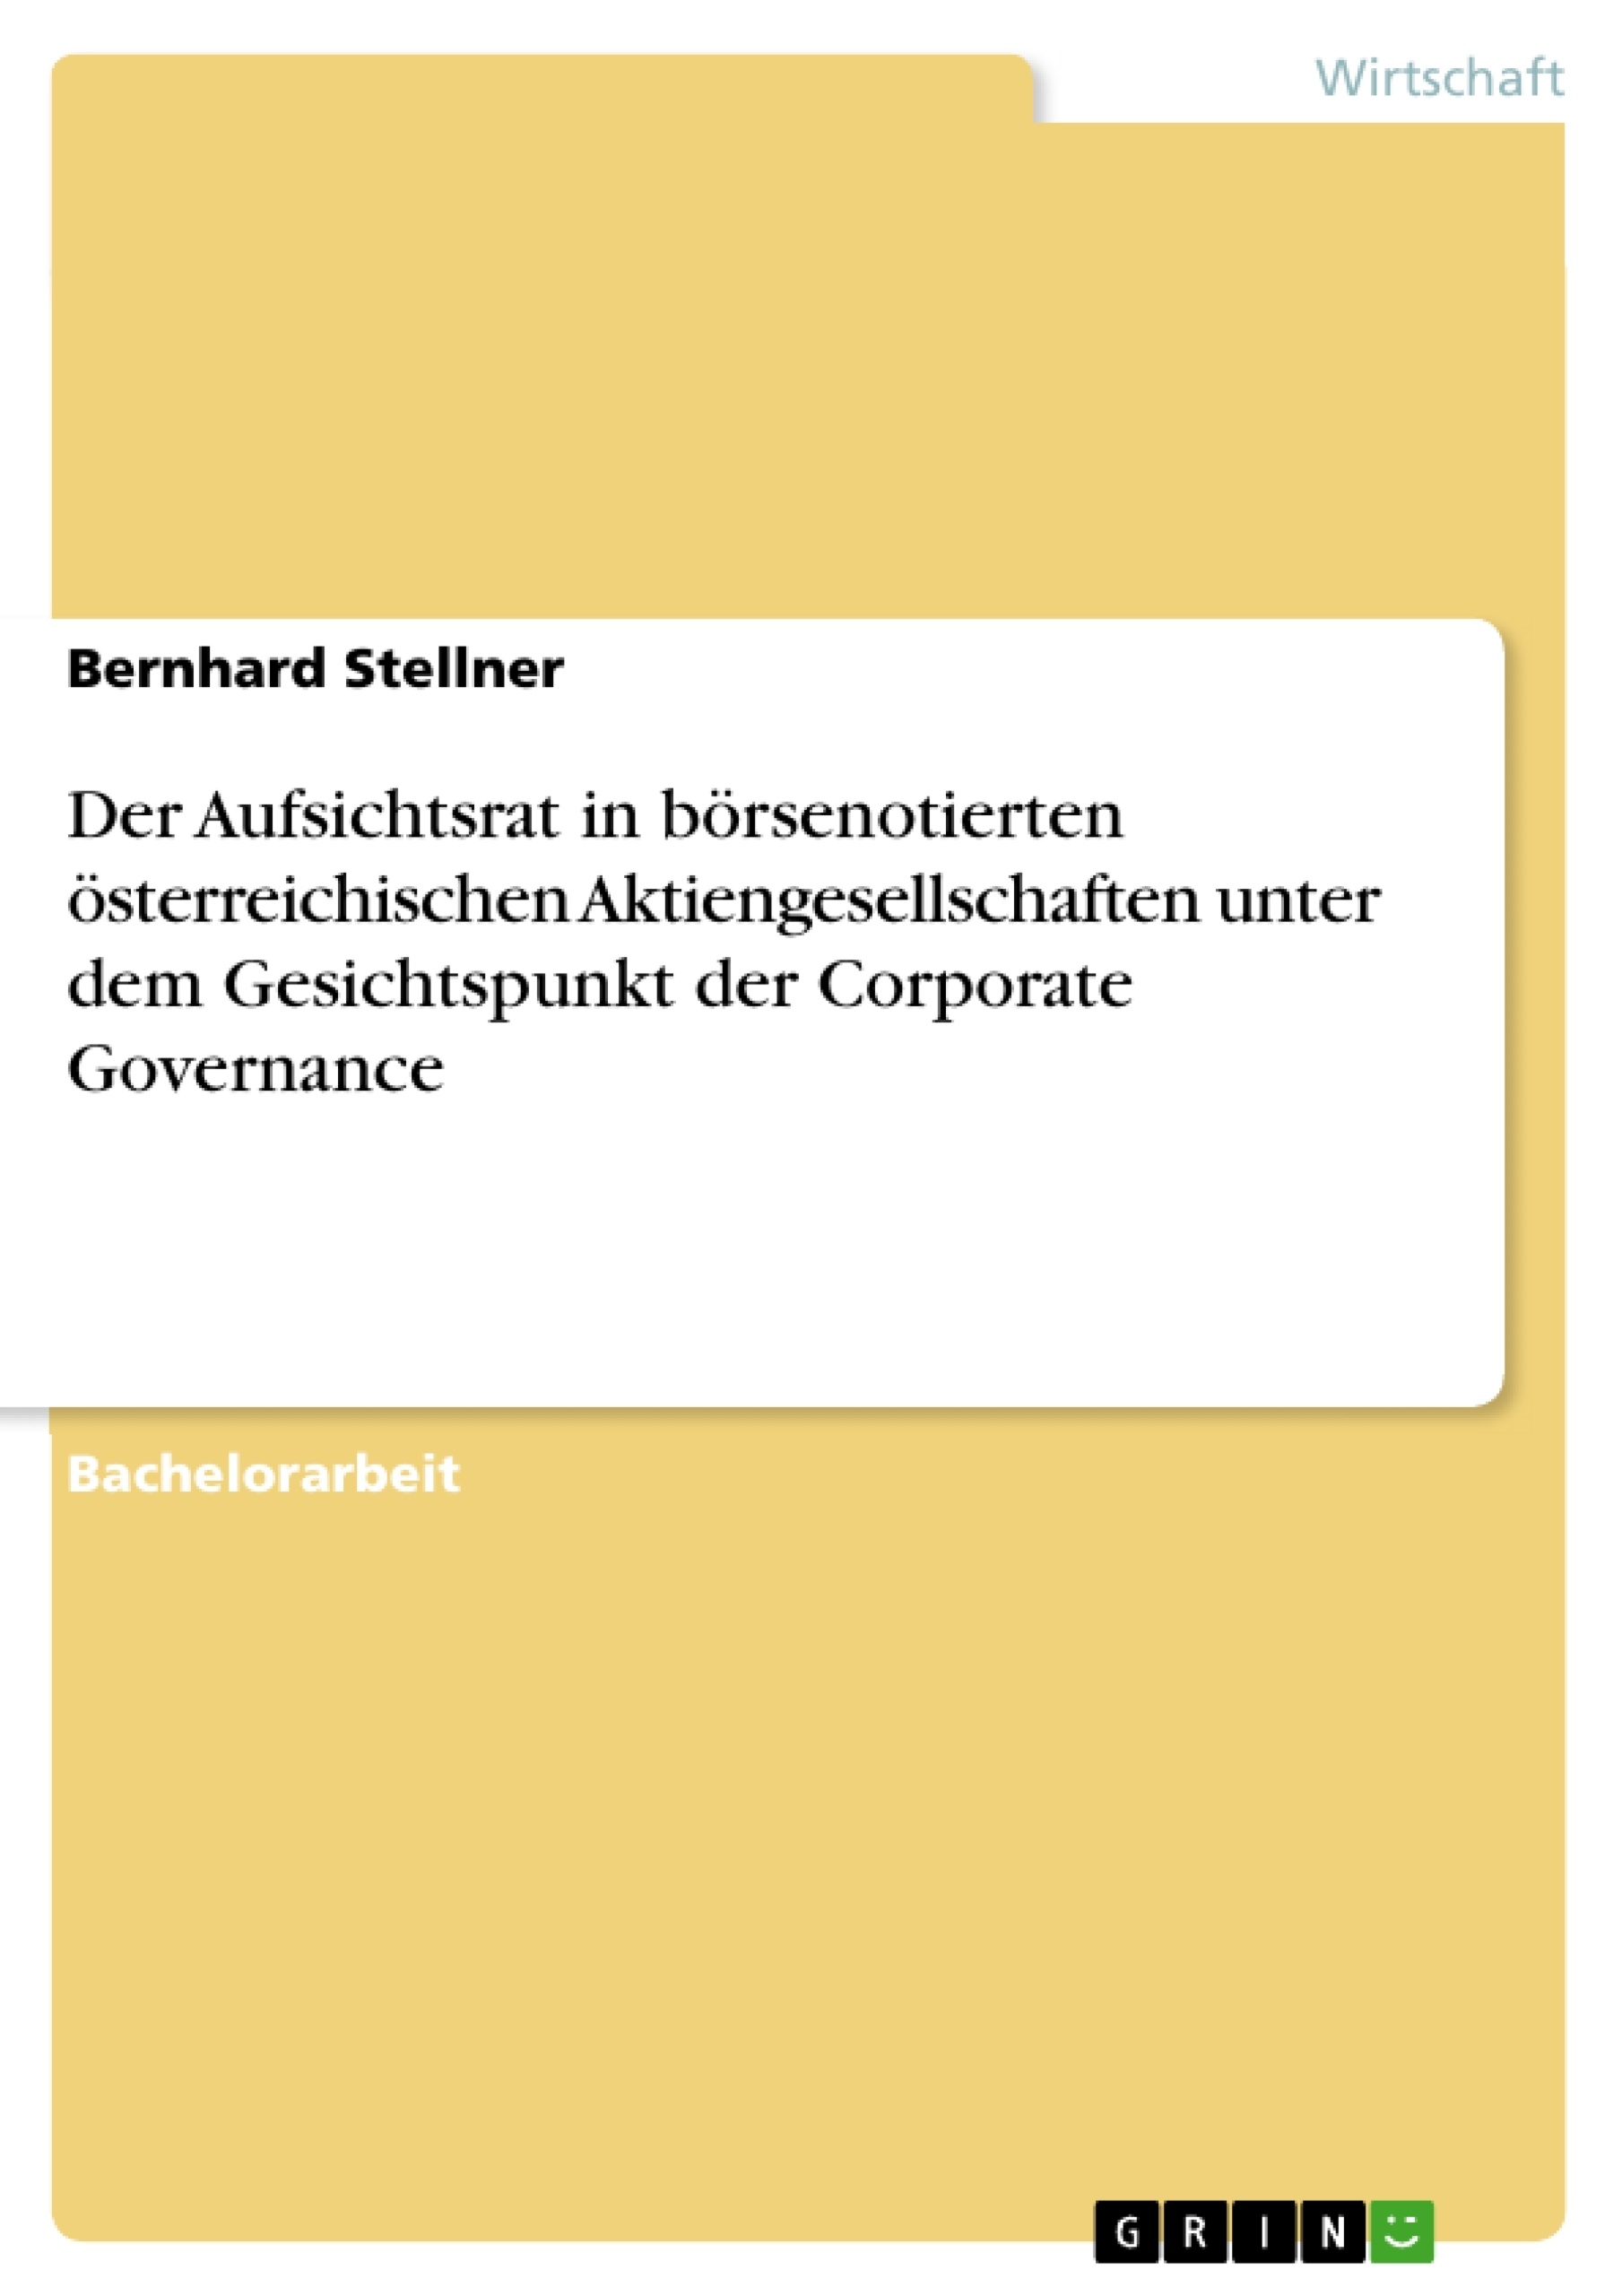 Titel: Der Aufsichtsrat in börsenotierten österreichischen Aktiengesellschaften unter dem Gesichtspunkt der Corporate Governance